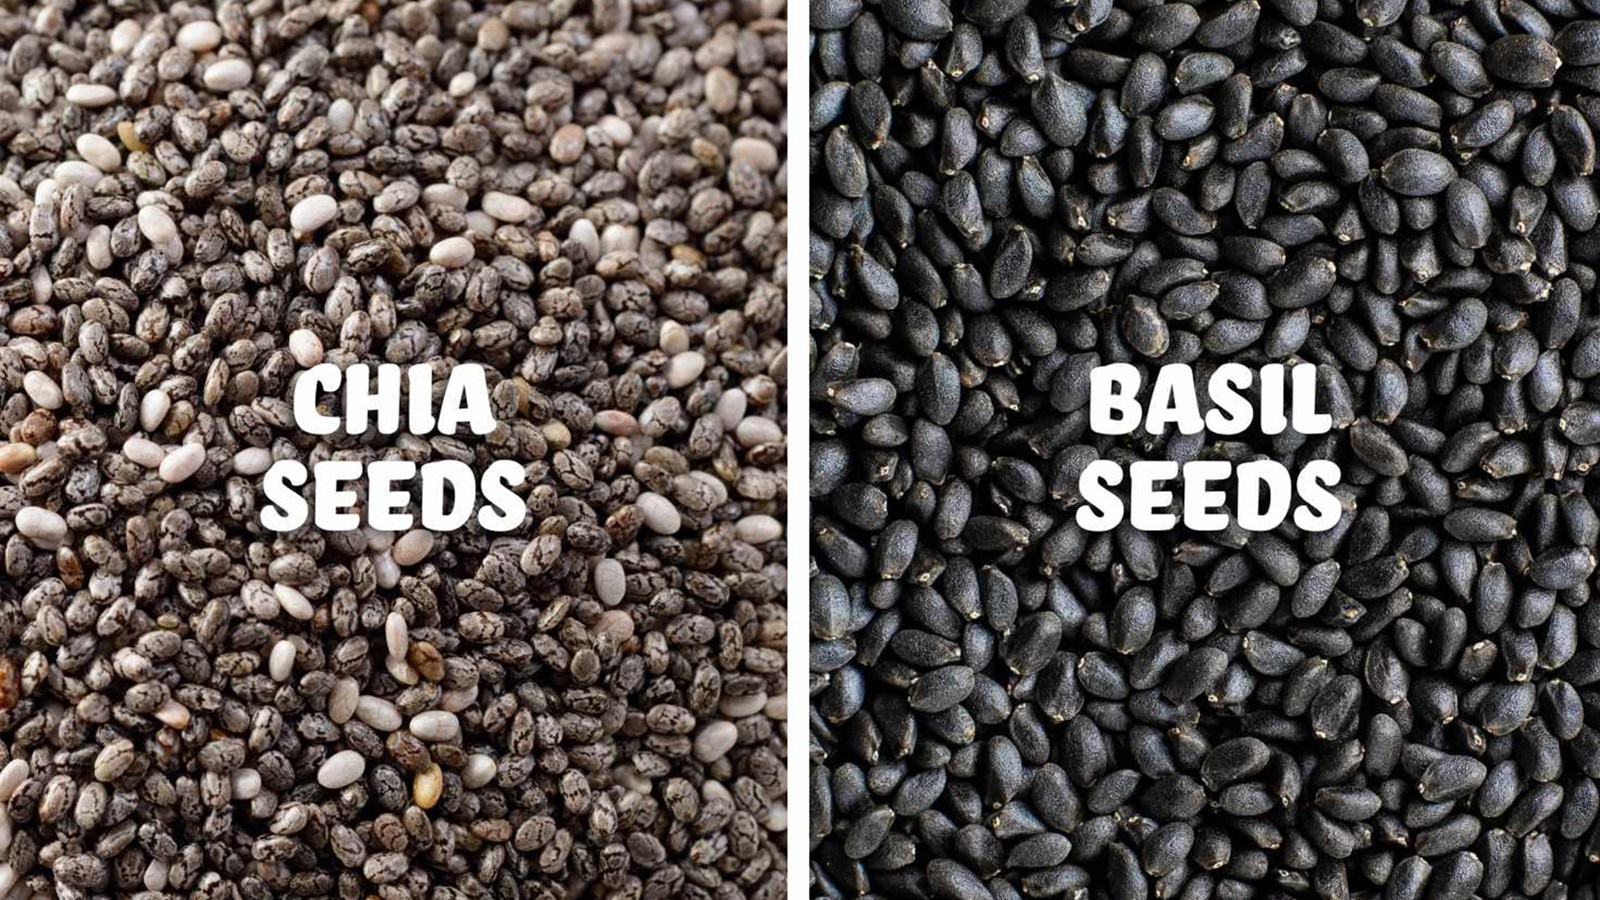 Basil seeds and chia seeds